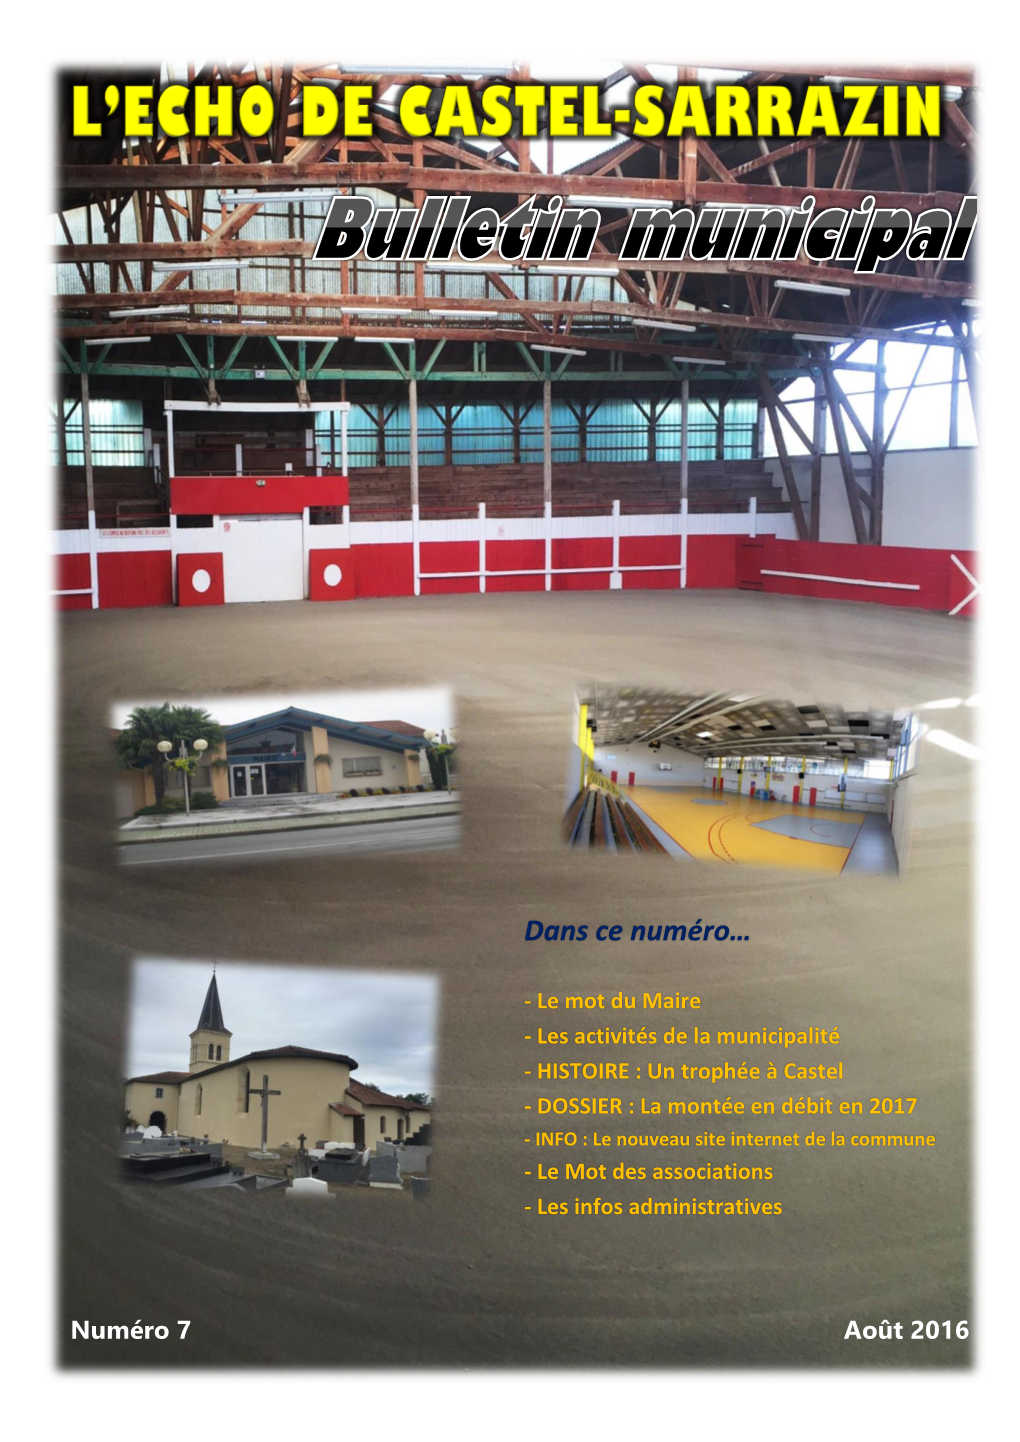 Bulletin Municipal 2016